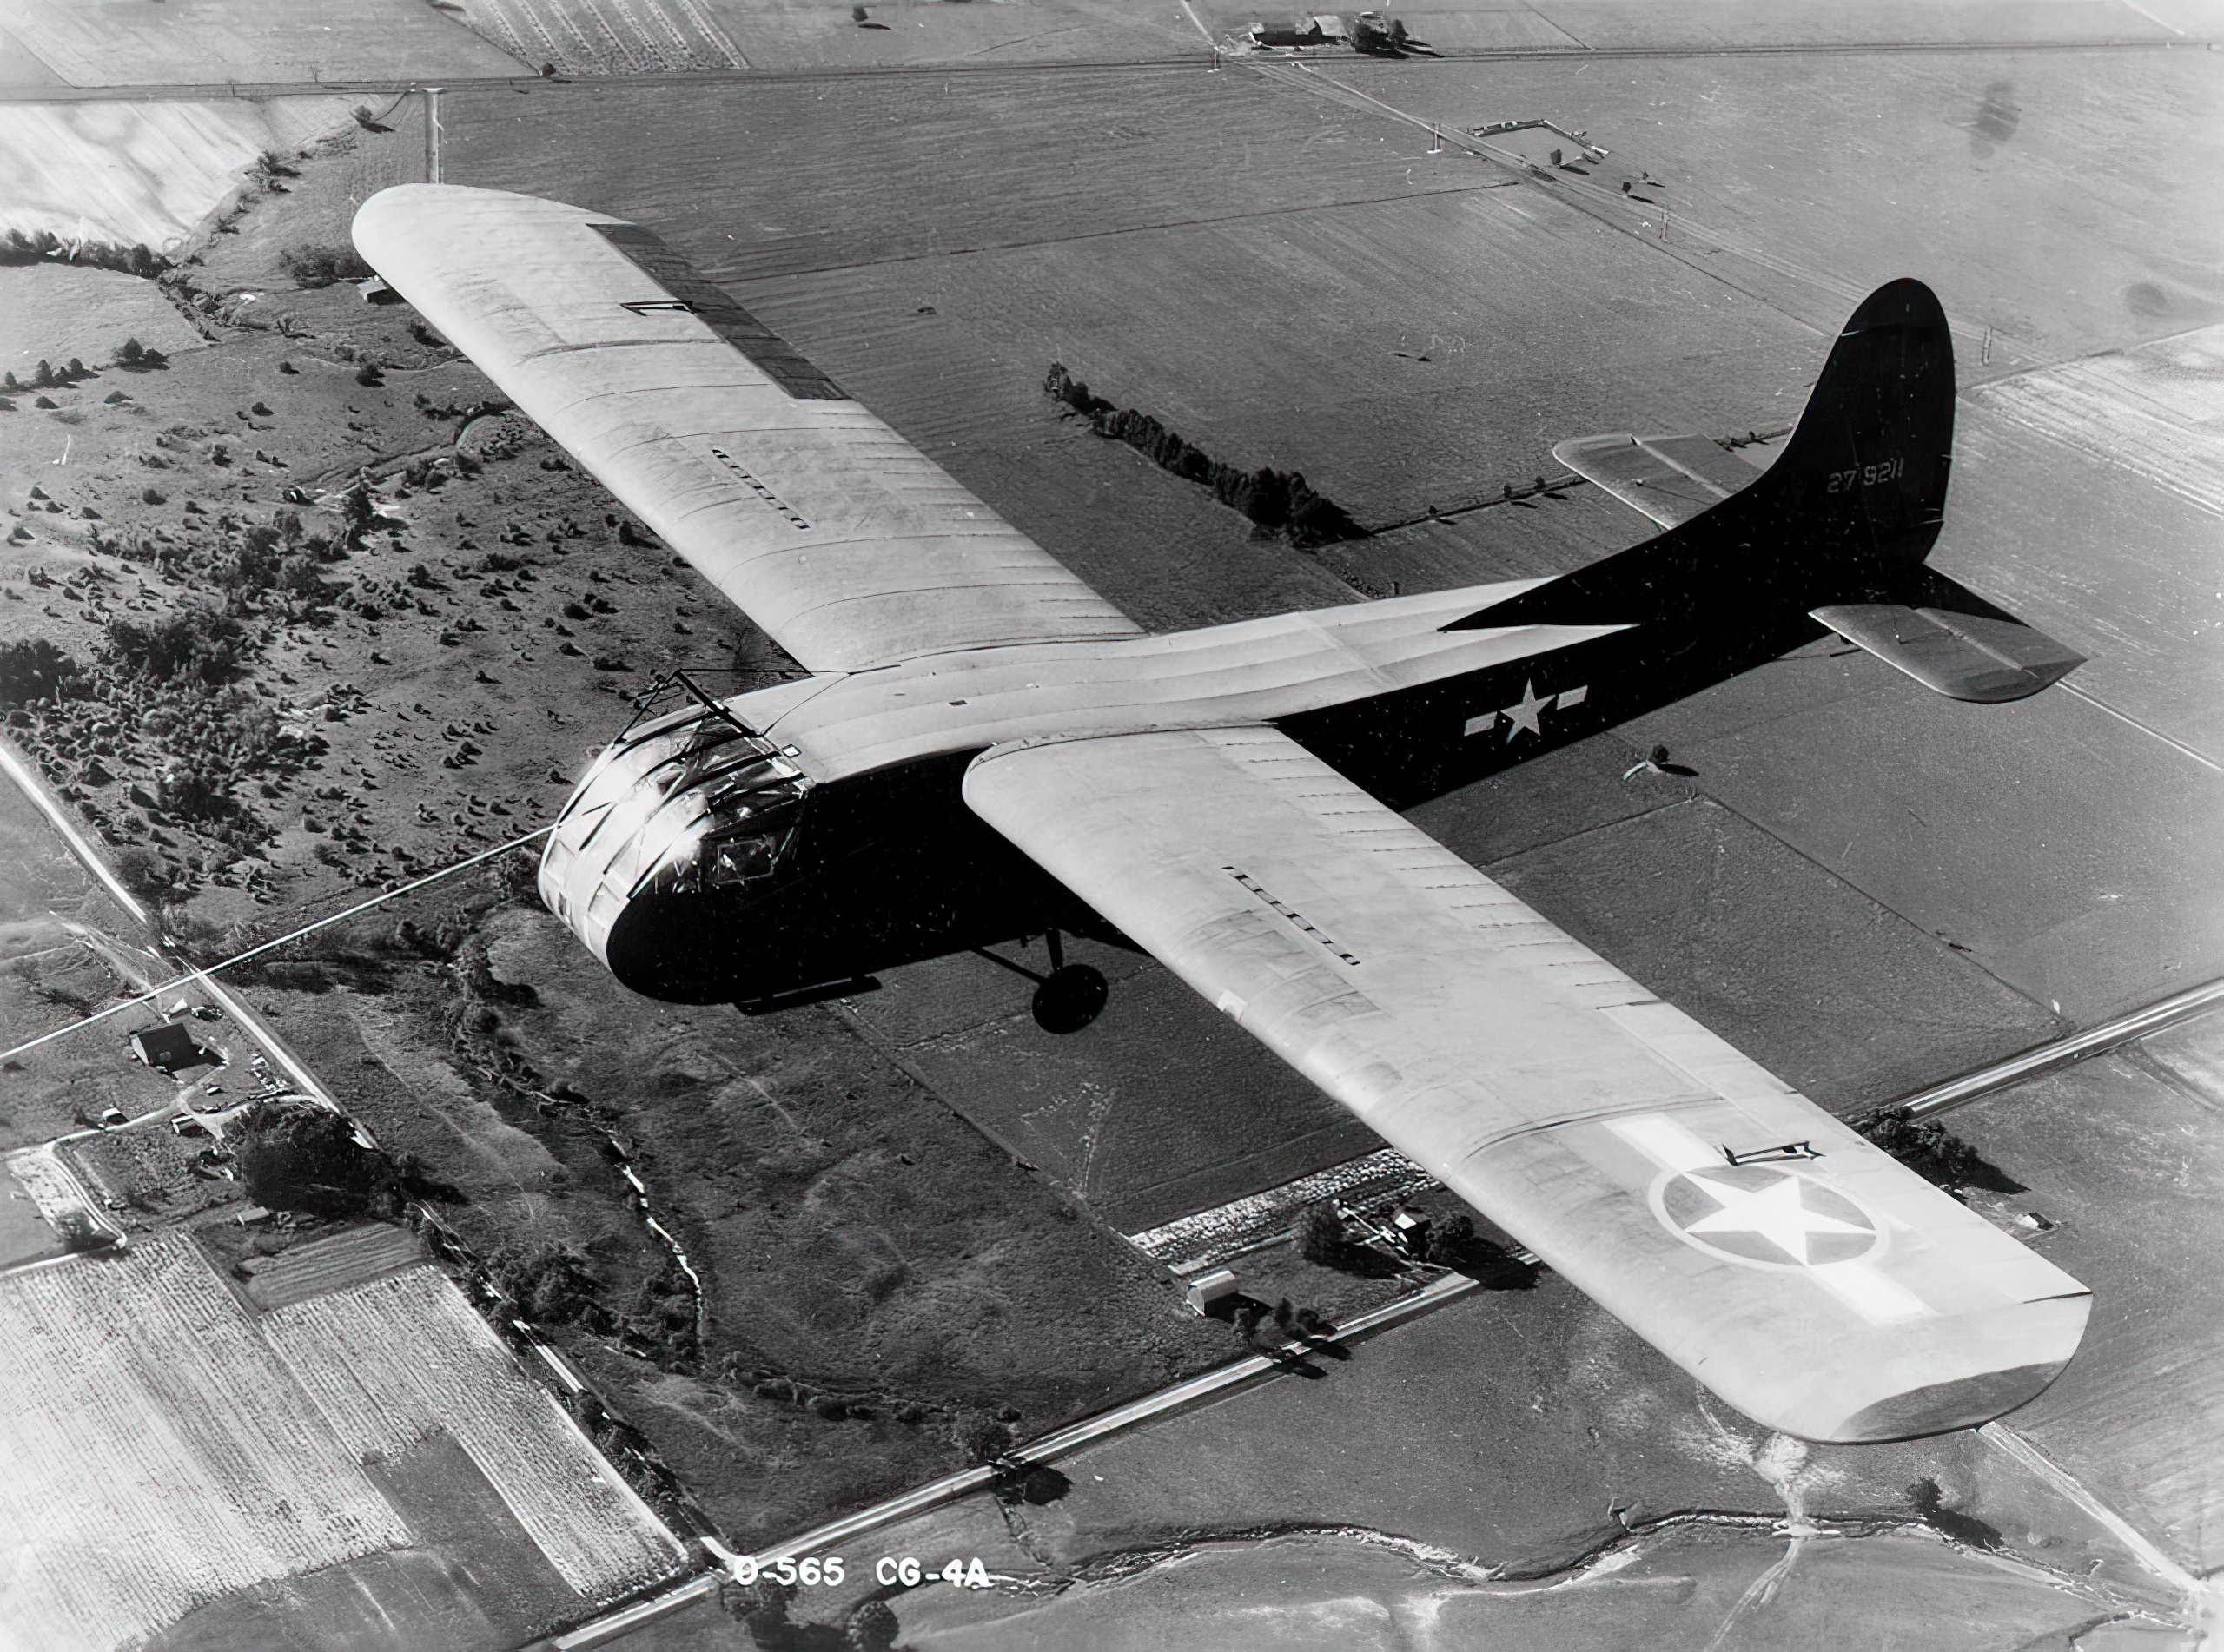 A U.S. Army Air Force Waco CG-4A-WO glider (s/n 42-79211) in 1943